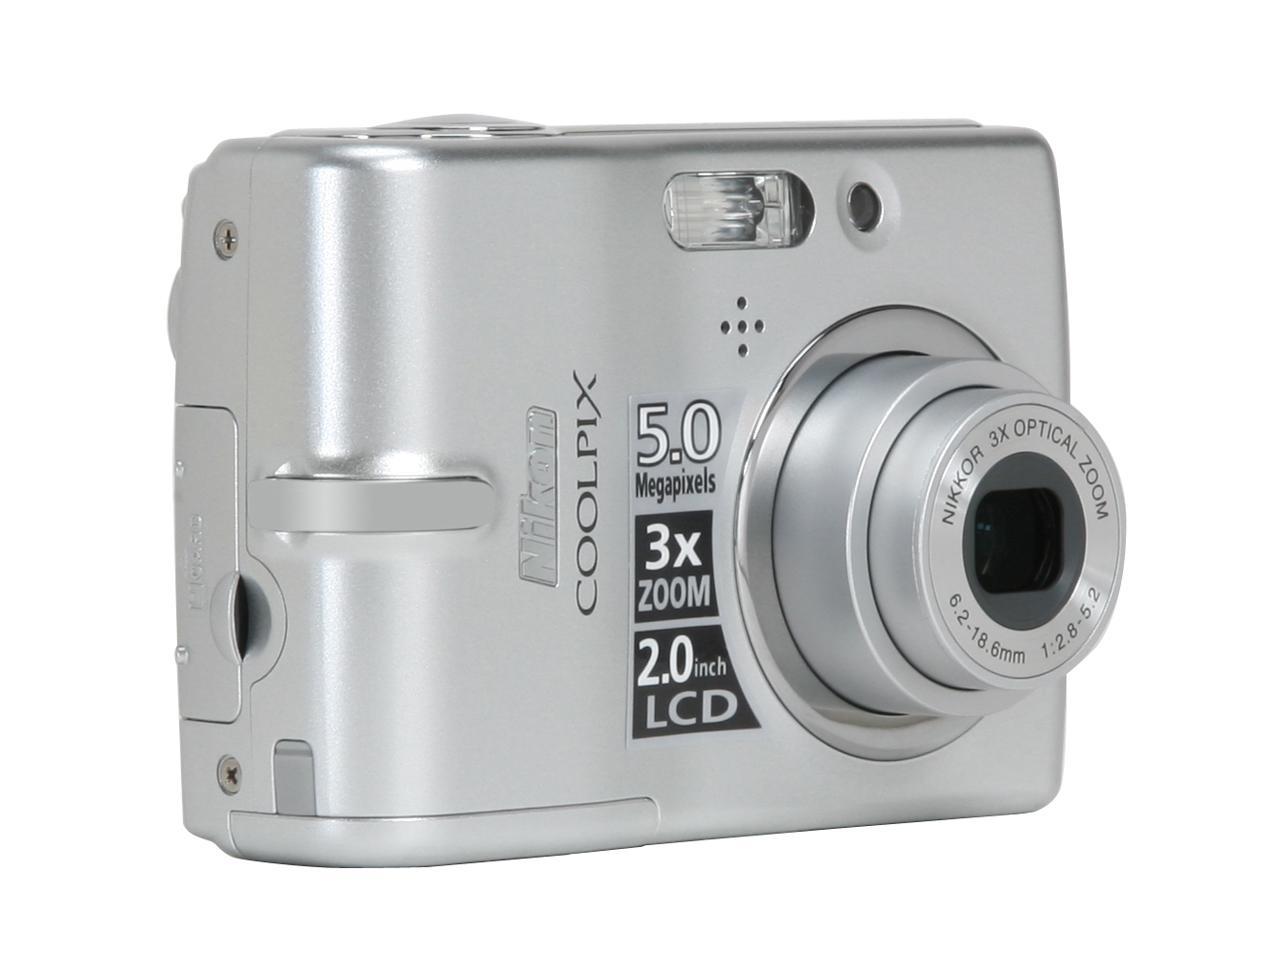 saai Pikken vooroordeel Nikon CoolPix L10 Silver 5.0 MP Digital Camera - Newegg.com